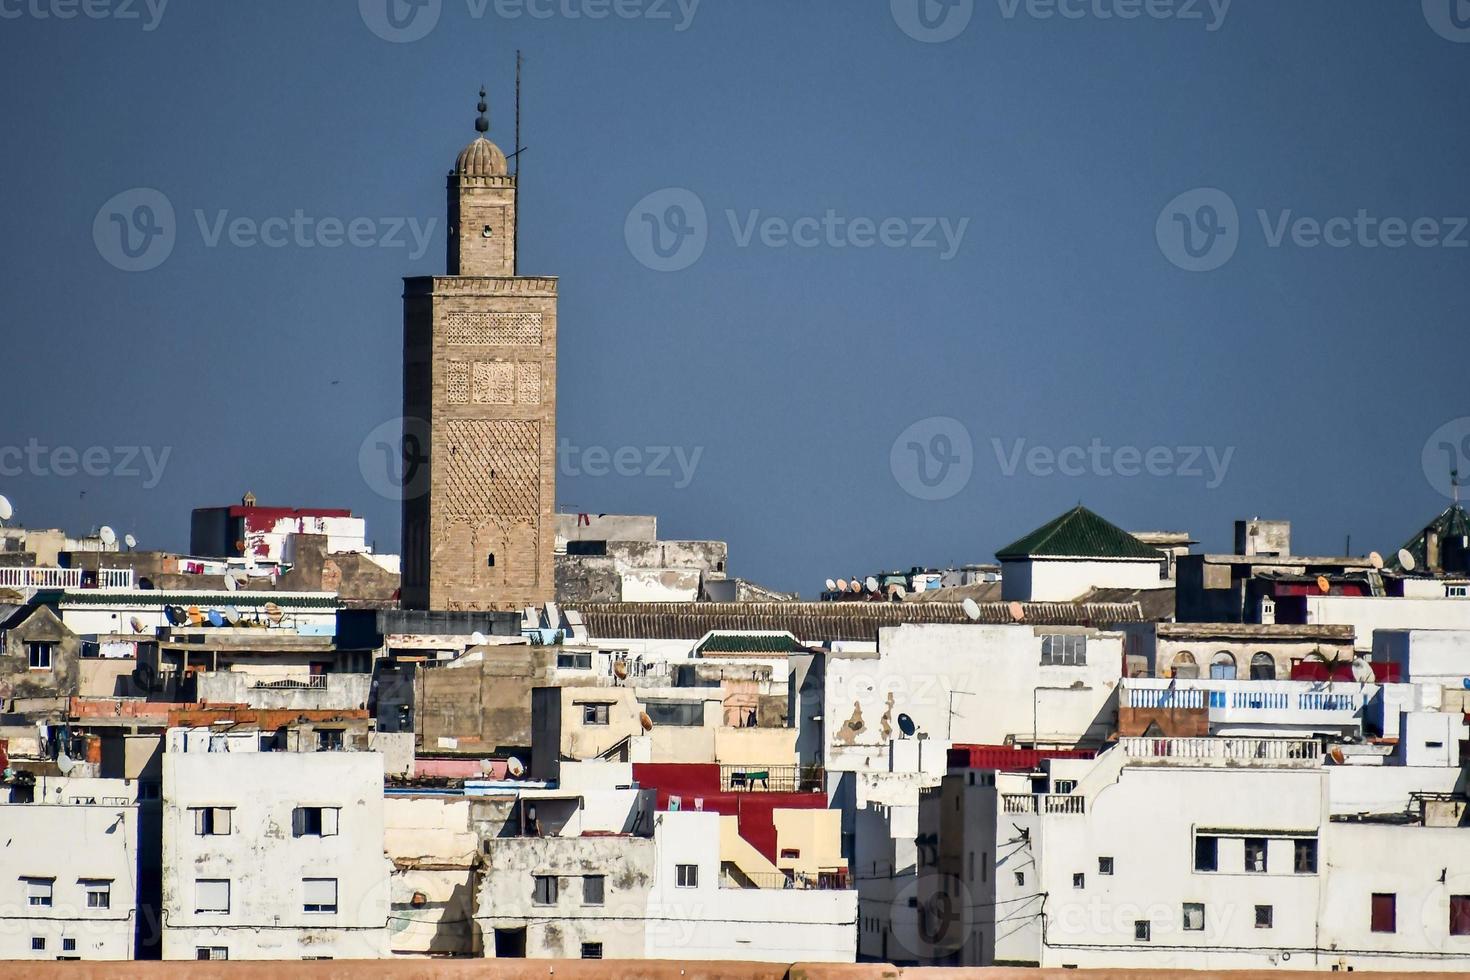 vista de marrakech, marrocos foto